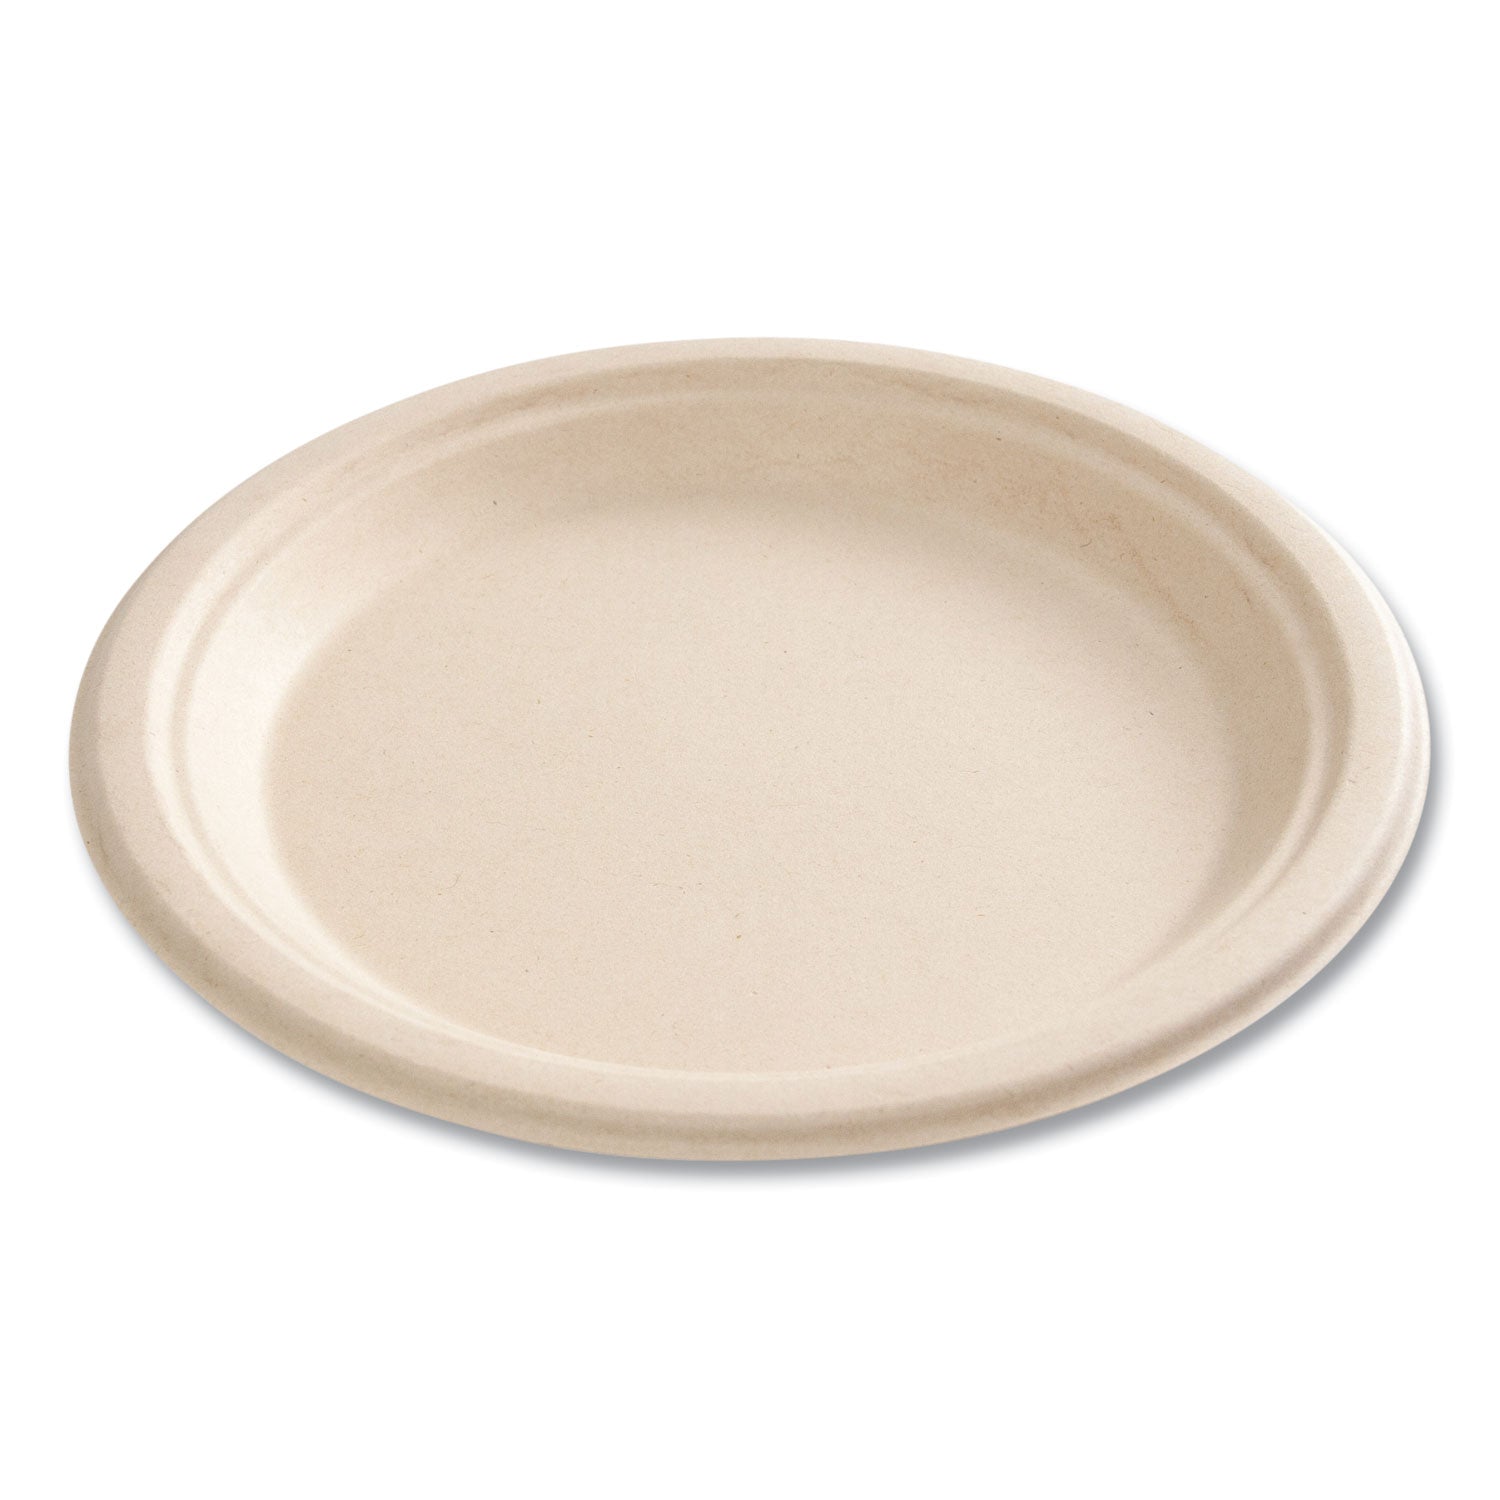 bagasse-pfas-free-dinnerware-plate-9-dia-tan-500-carton_bwkplate9npfa - 7